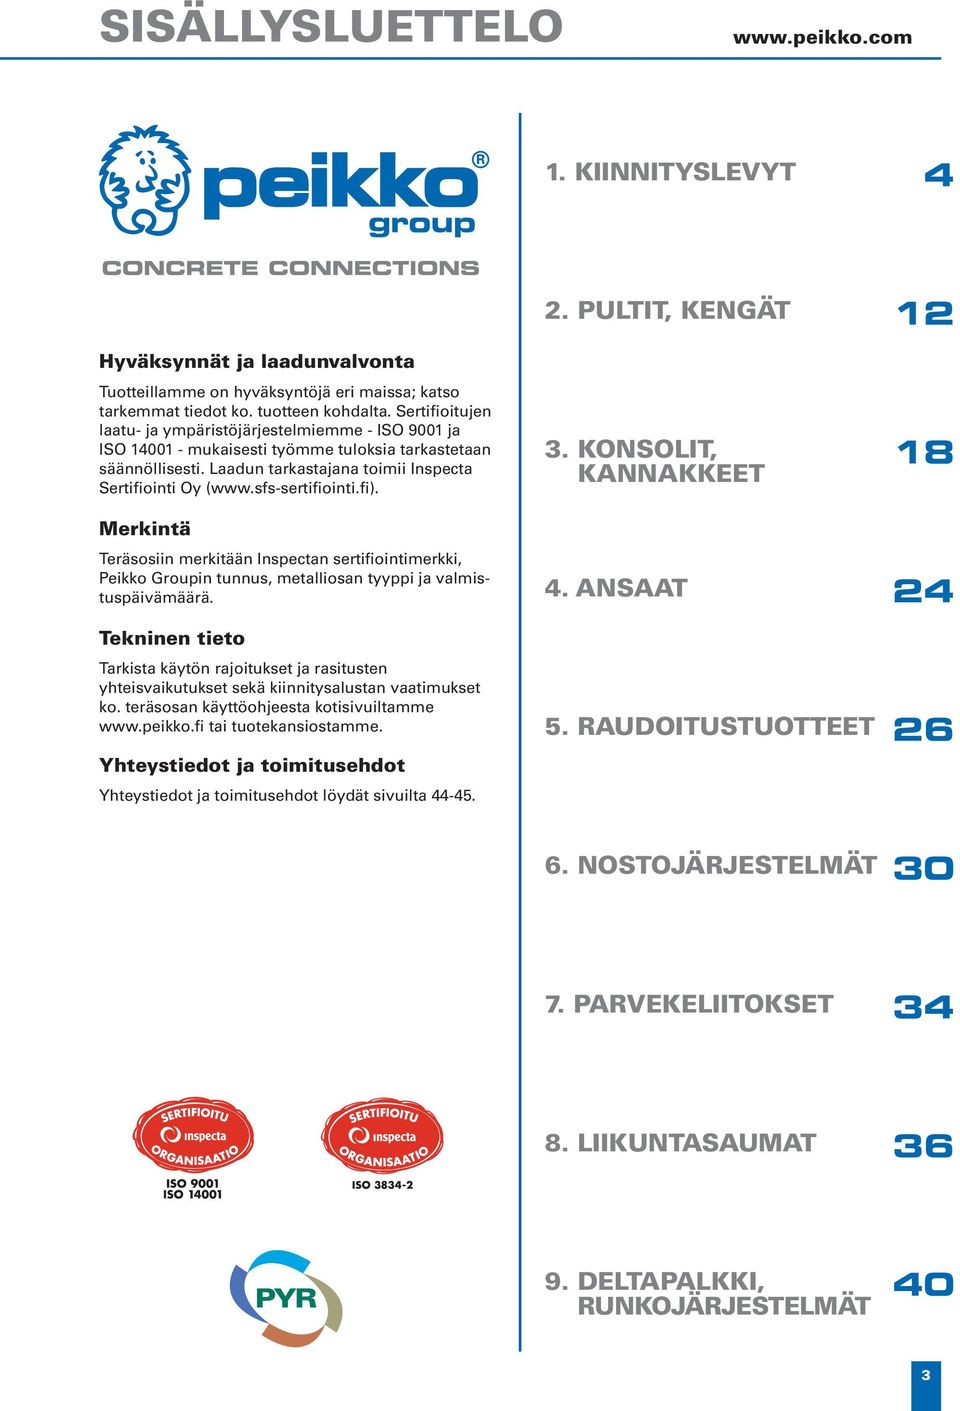 sfs-sertifiointi.fi). 3. KONSOLIT, KANNAKKEET 18 Merkintä Teräsosiin merkitään Inspectan sertifiointimerkki, Peikko Groupin tunnus, metalliosan tyyppi ja valmistuspäivämäärä.